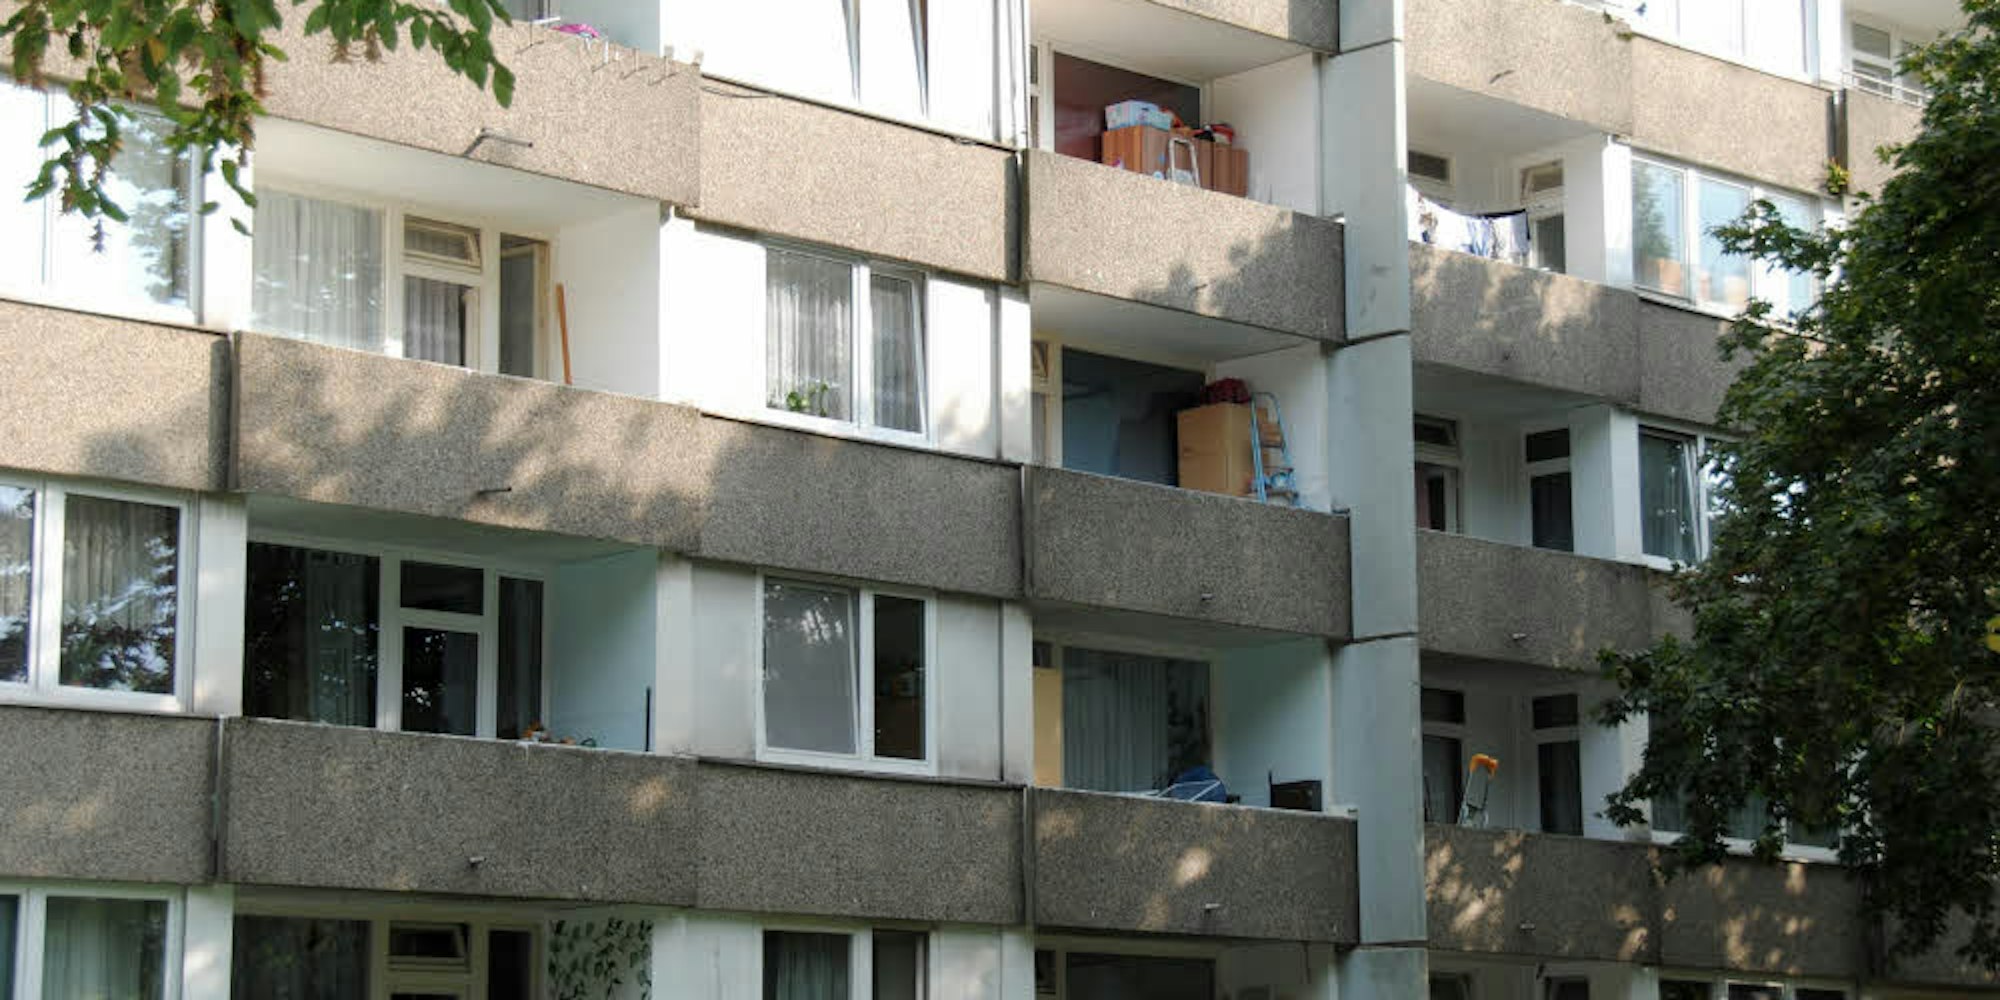 Viele Wohnungen in der Siedlung „Im Mönchsfeld“ sind in einem schlechten Zustand und müssen dringend saniert werden. 